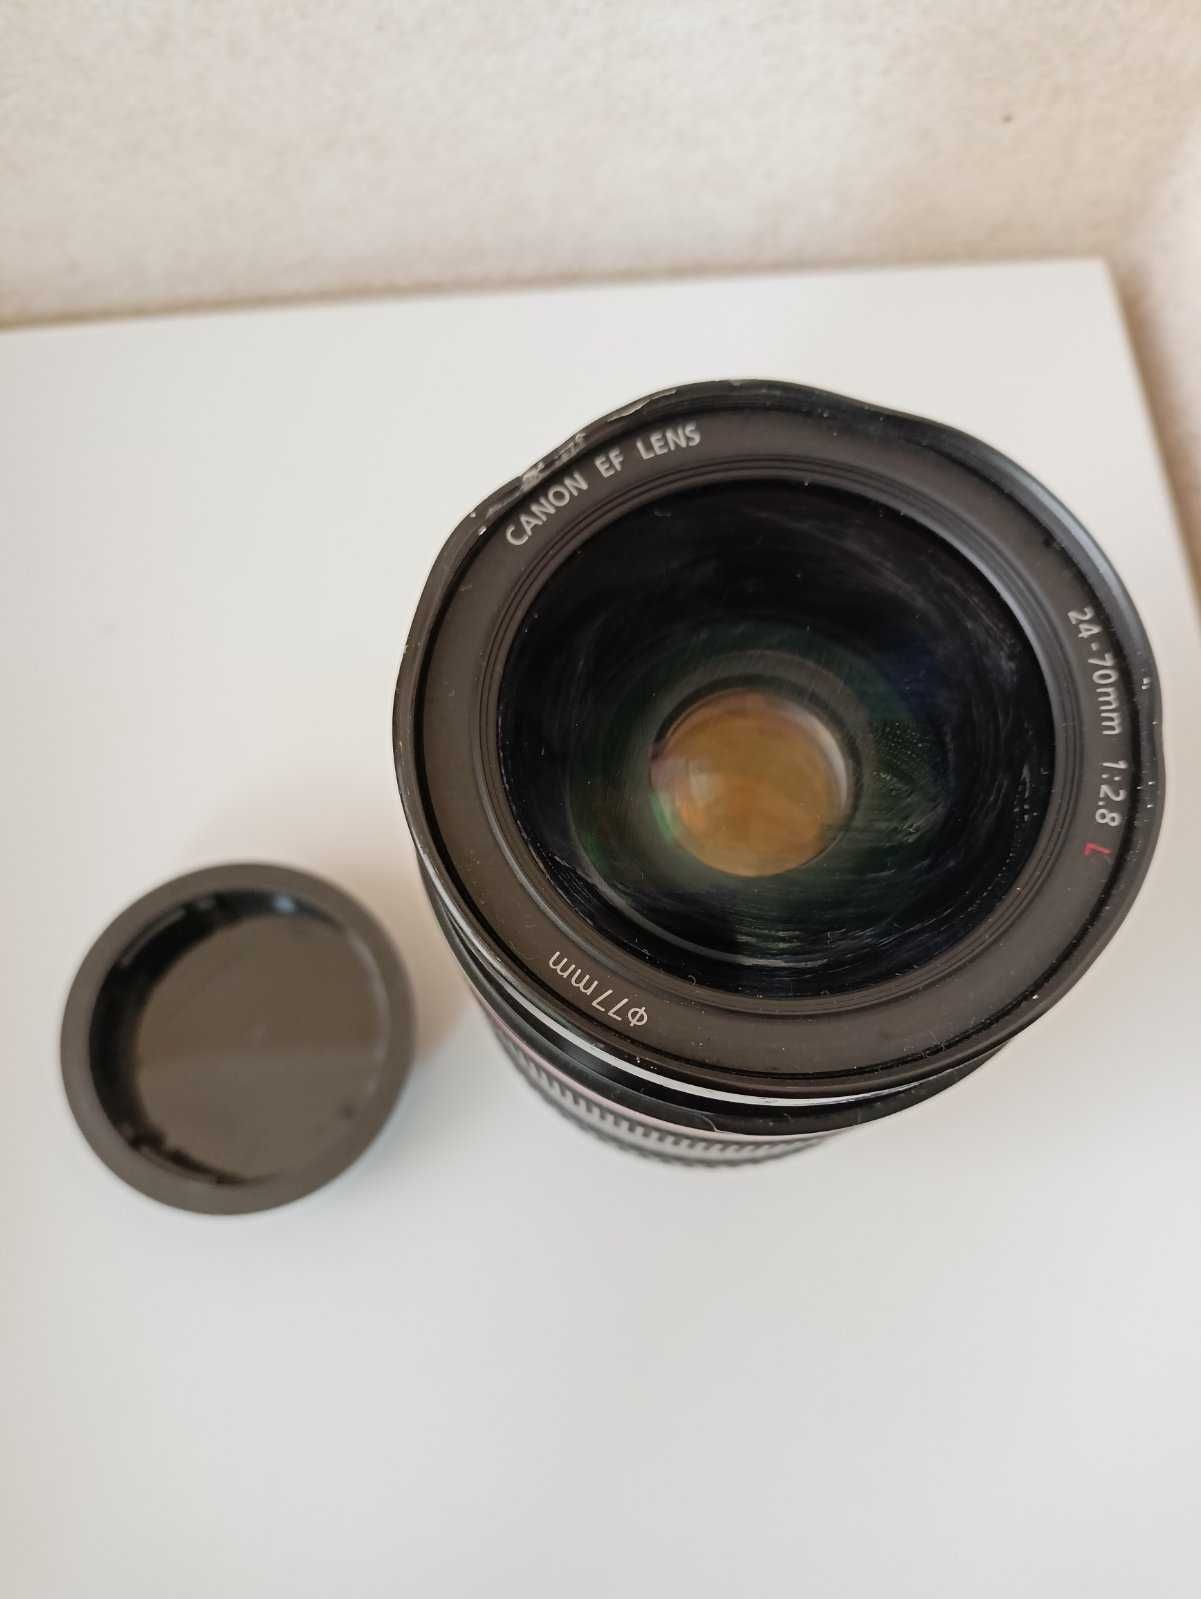 canon zoom lens ef 24-70mm 1 2.8 l usm б/у